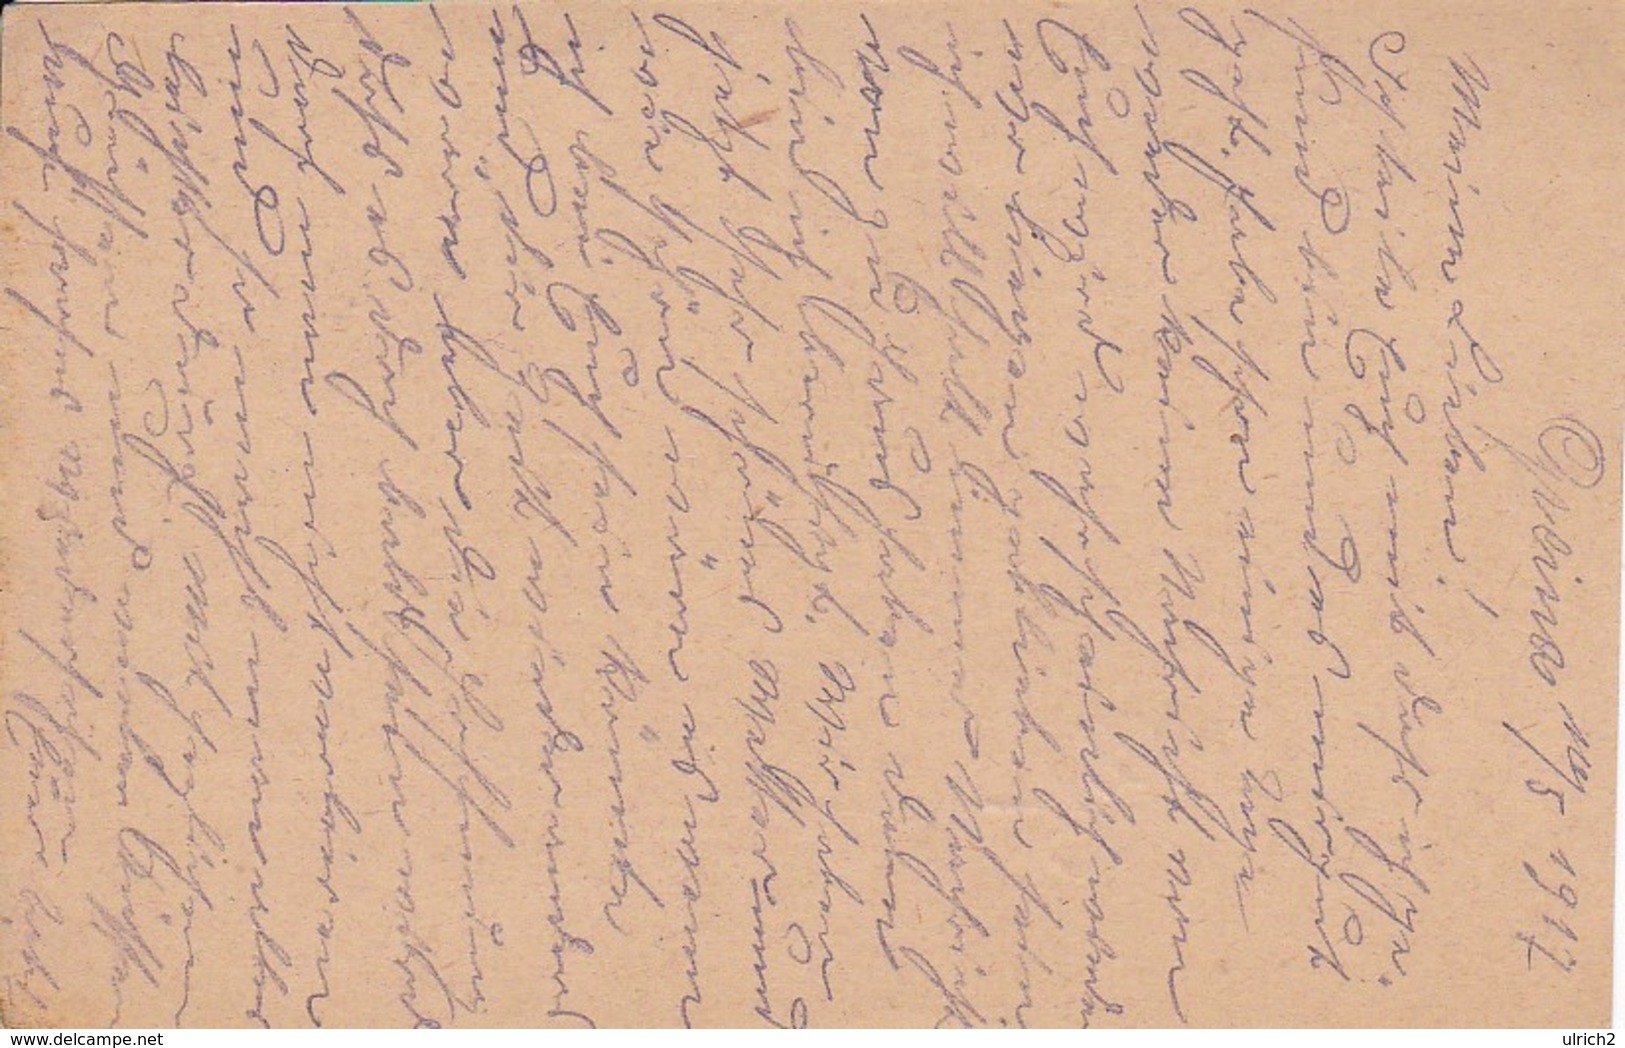 Feldpostkorrespondenzkarte K.k. Landsturm Eisenbahnsicherungs Kompagnie Opcina -  Feldpost 195/IV - 1917 (35292) - Briefe U. Dokumente